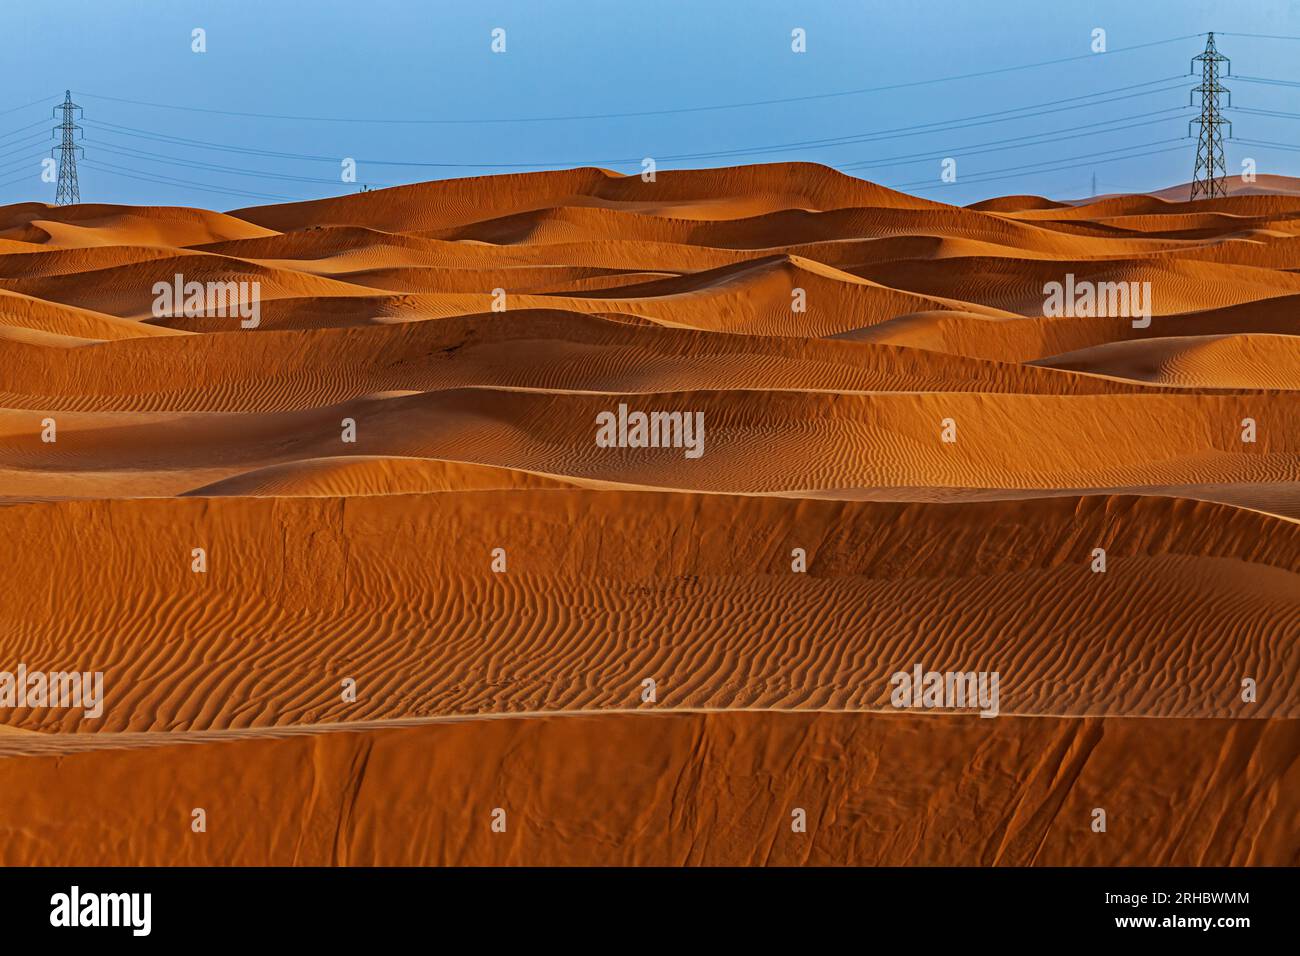 Pylônes électriques parmi les dunes de sable orange dans le désert, Arabie Saoudite Banque D'Images